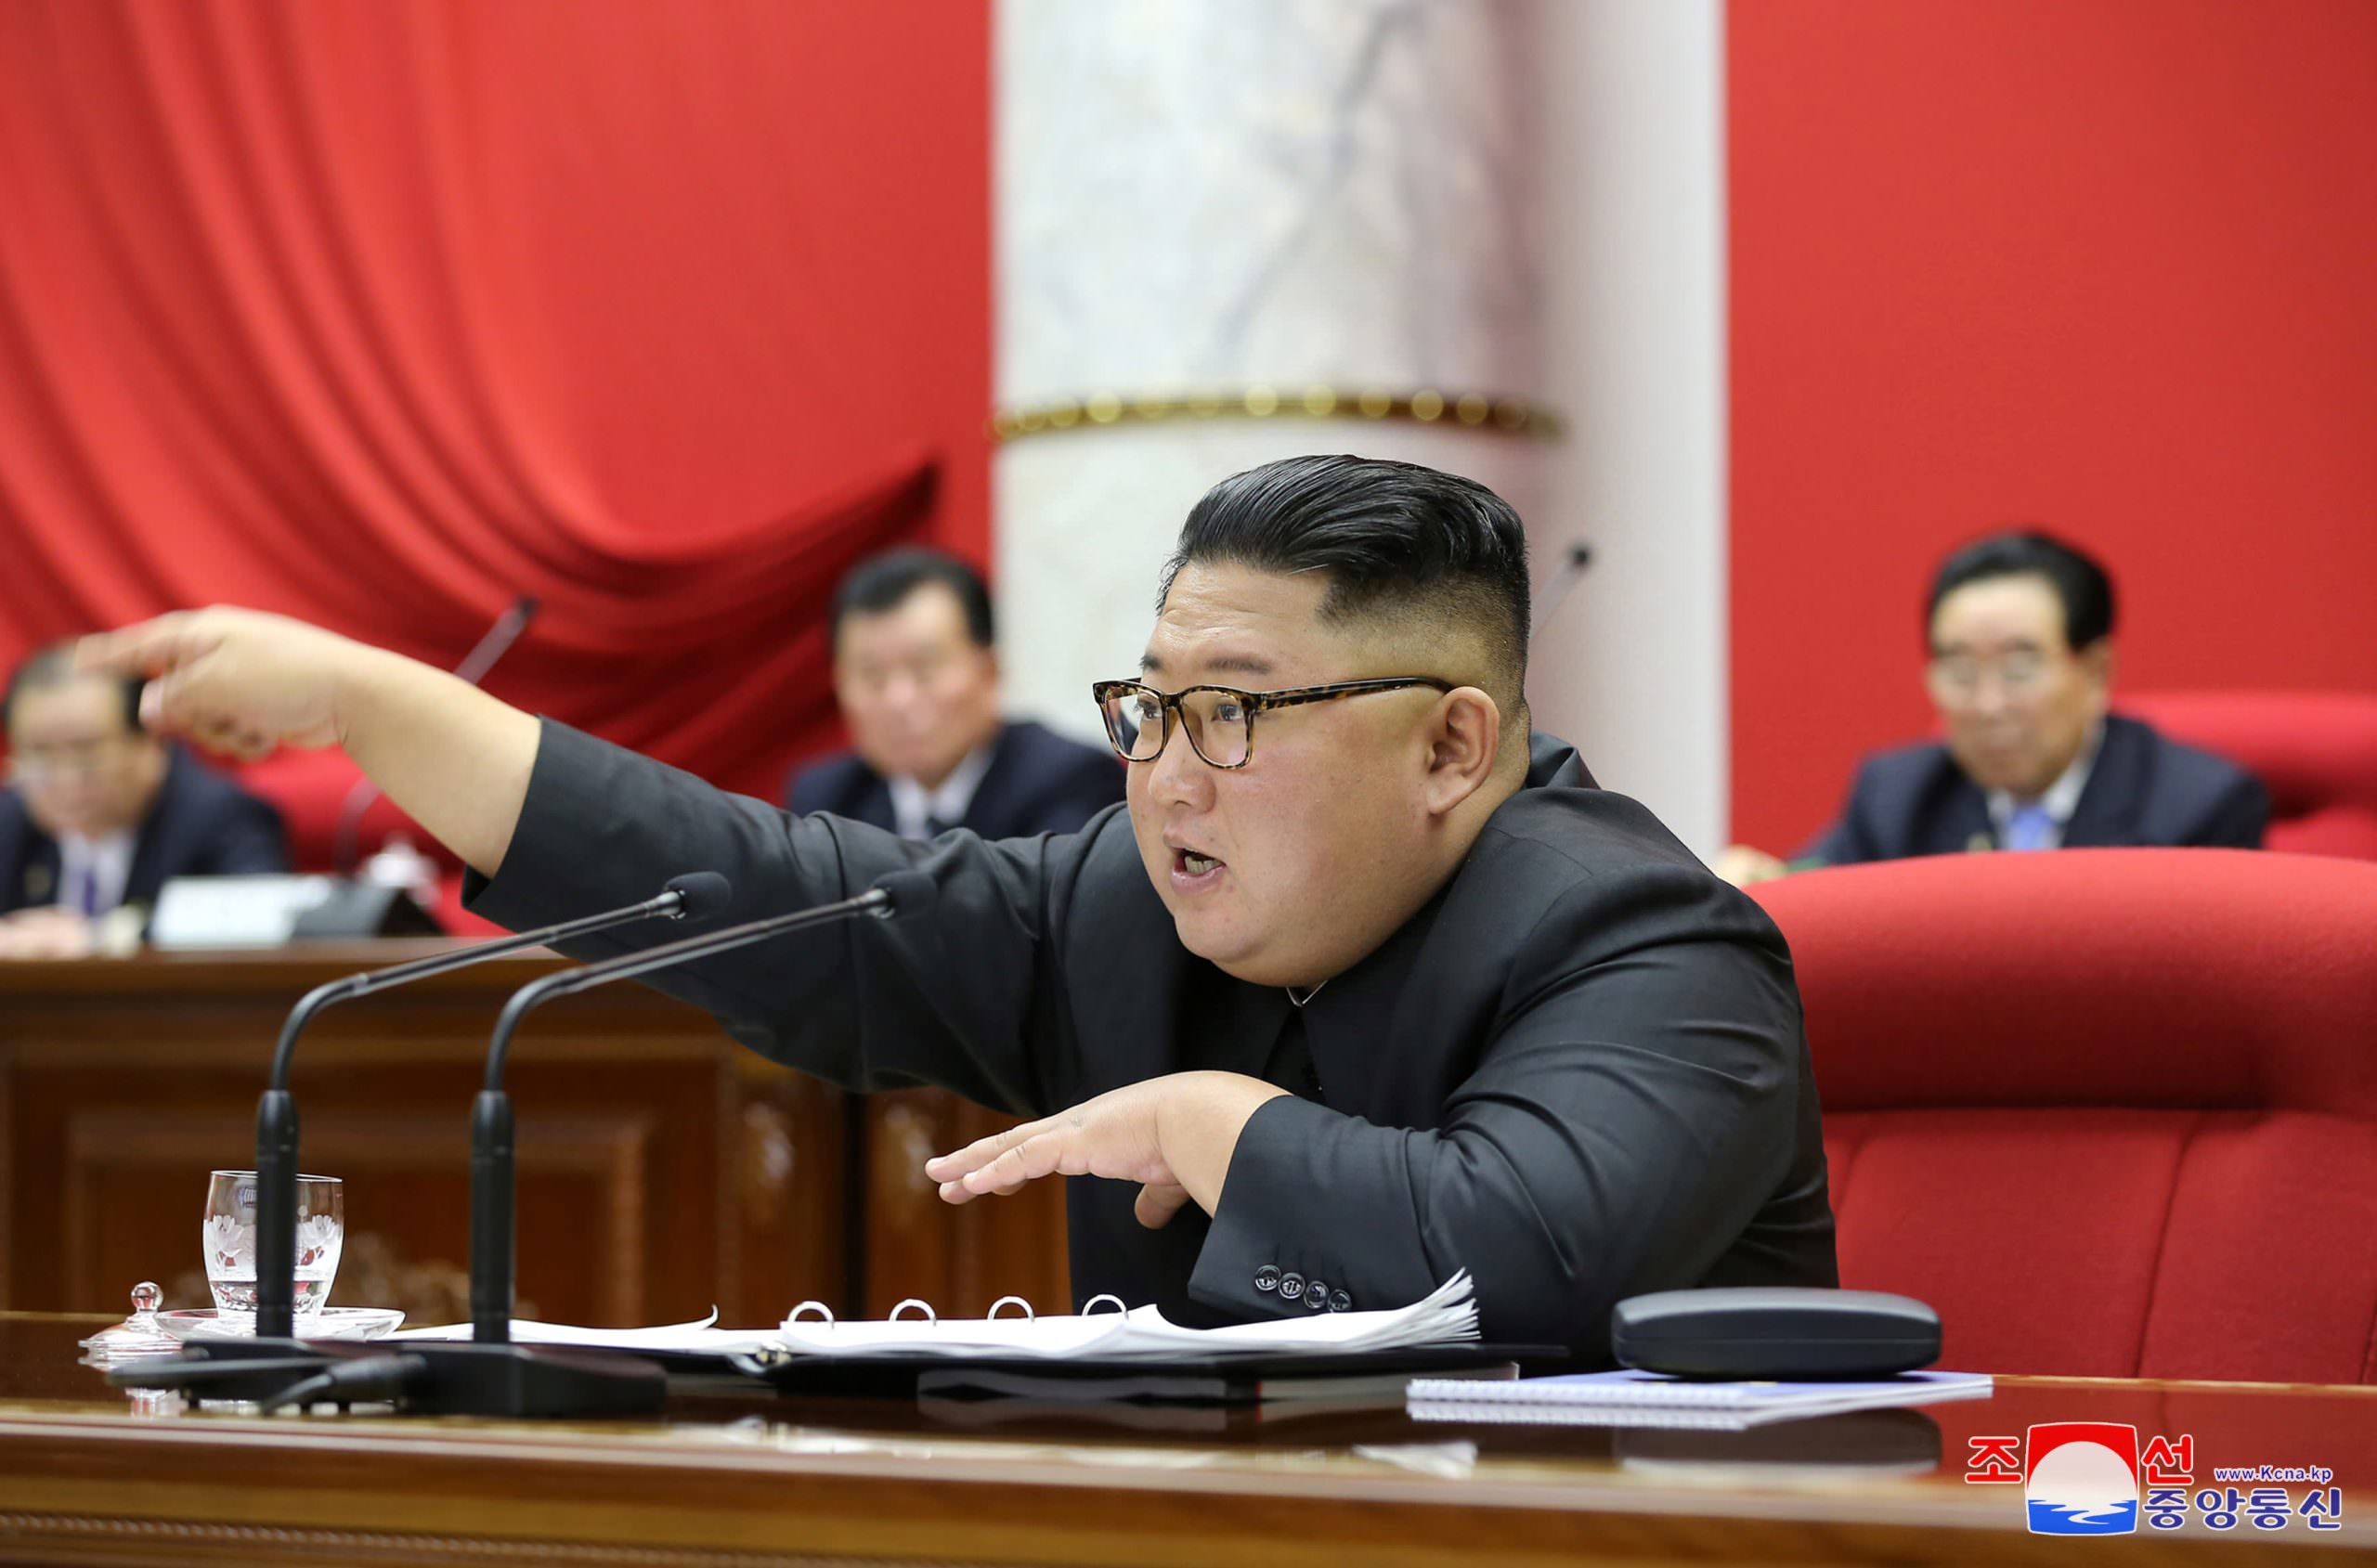 Северная Корея призналась в провале пятилетнего экономического плана